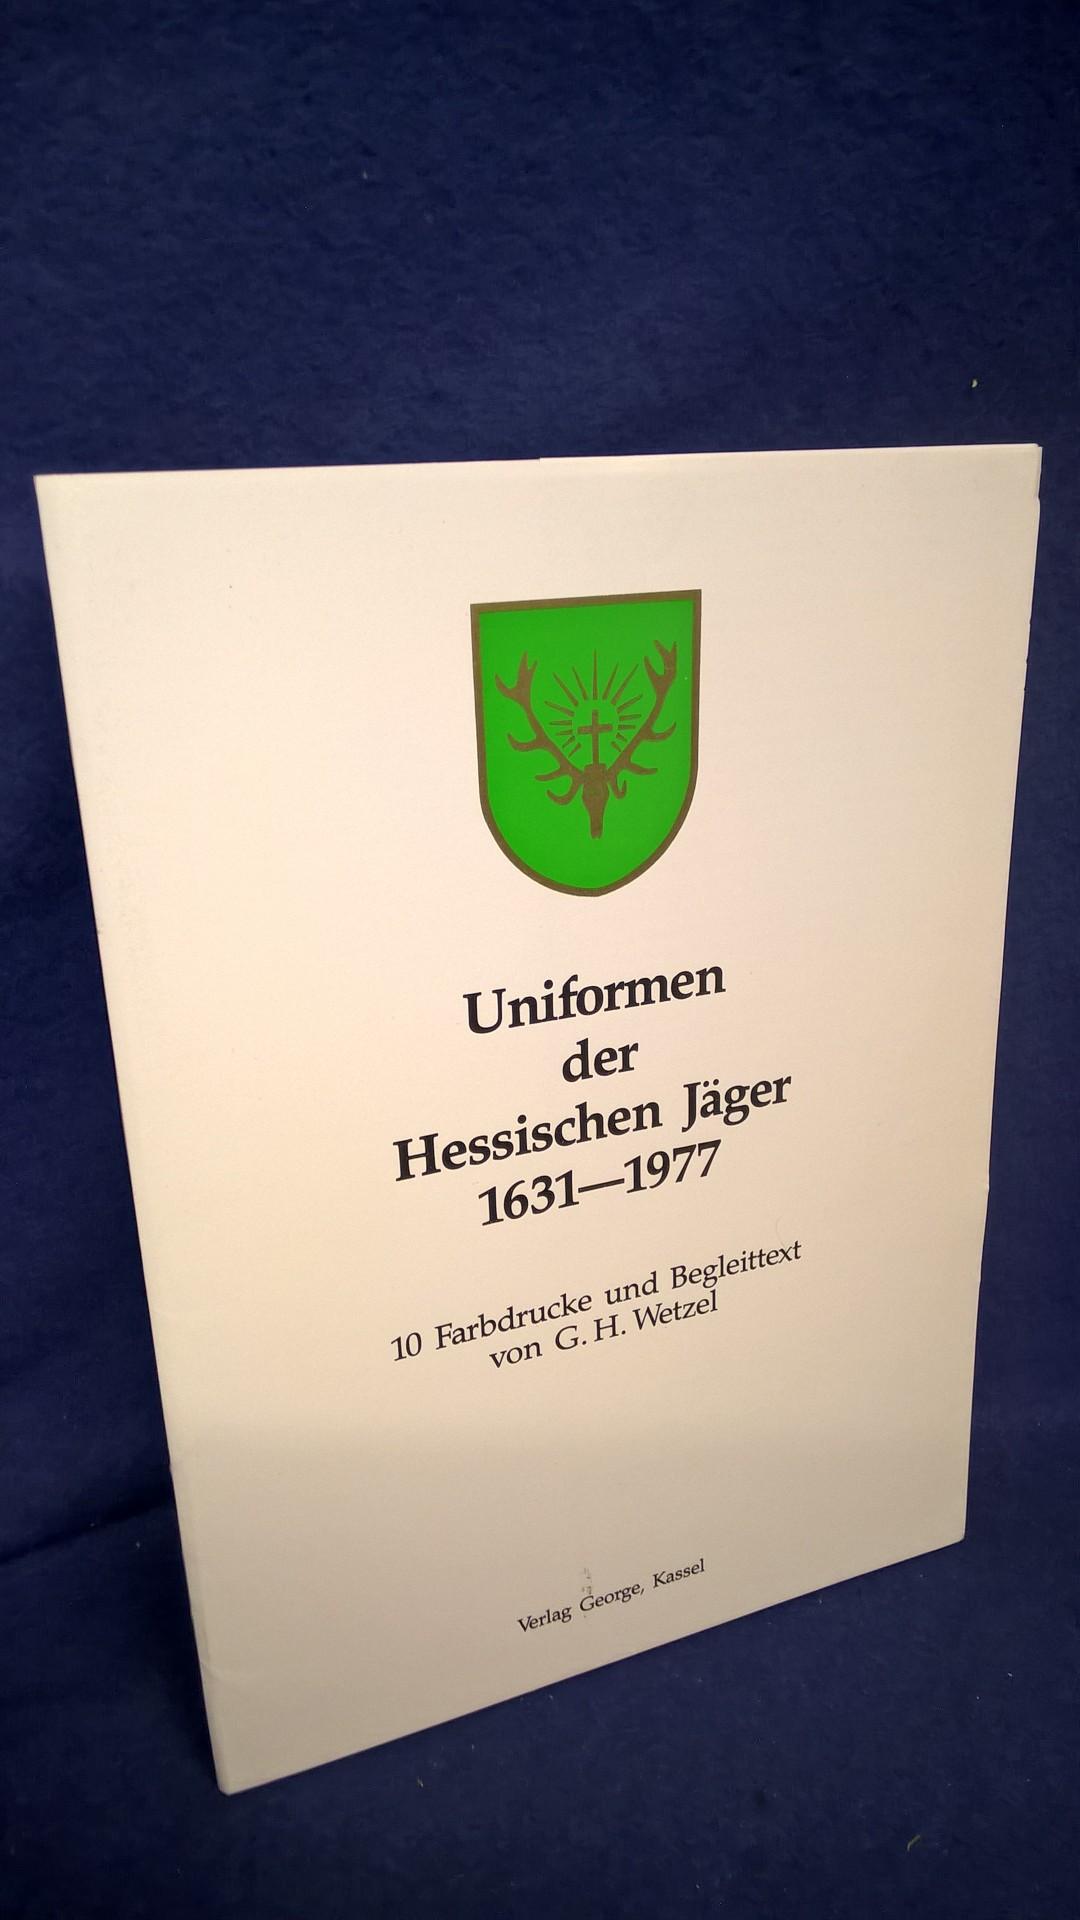 Uniformen der Hessischen Jäger 1631-1977.